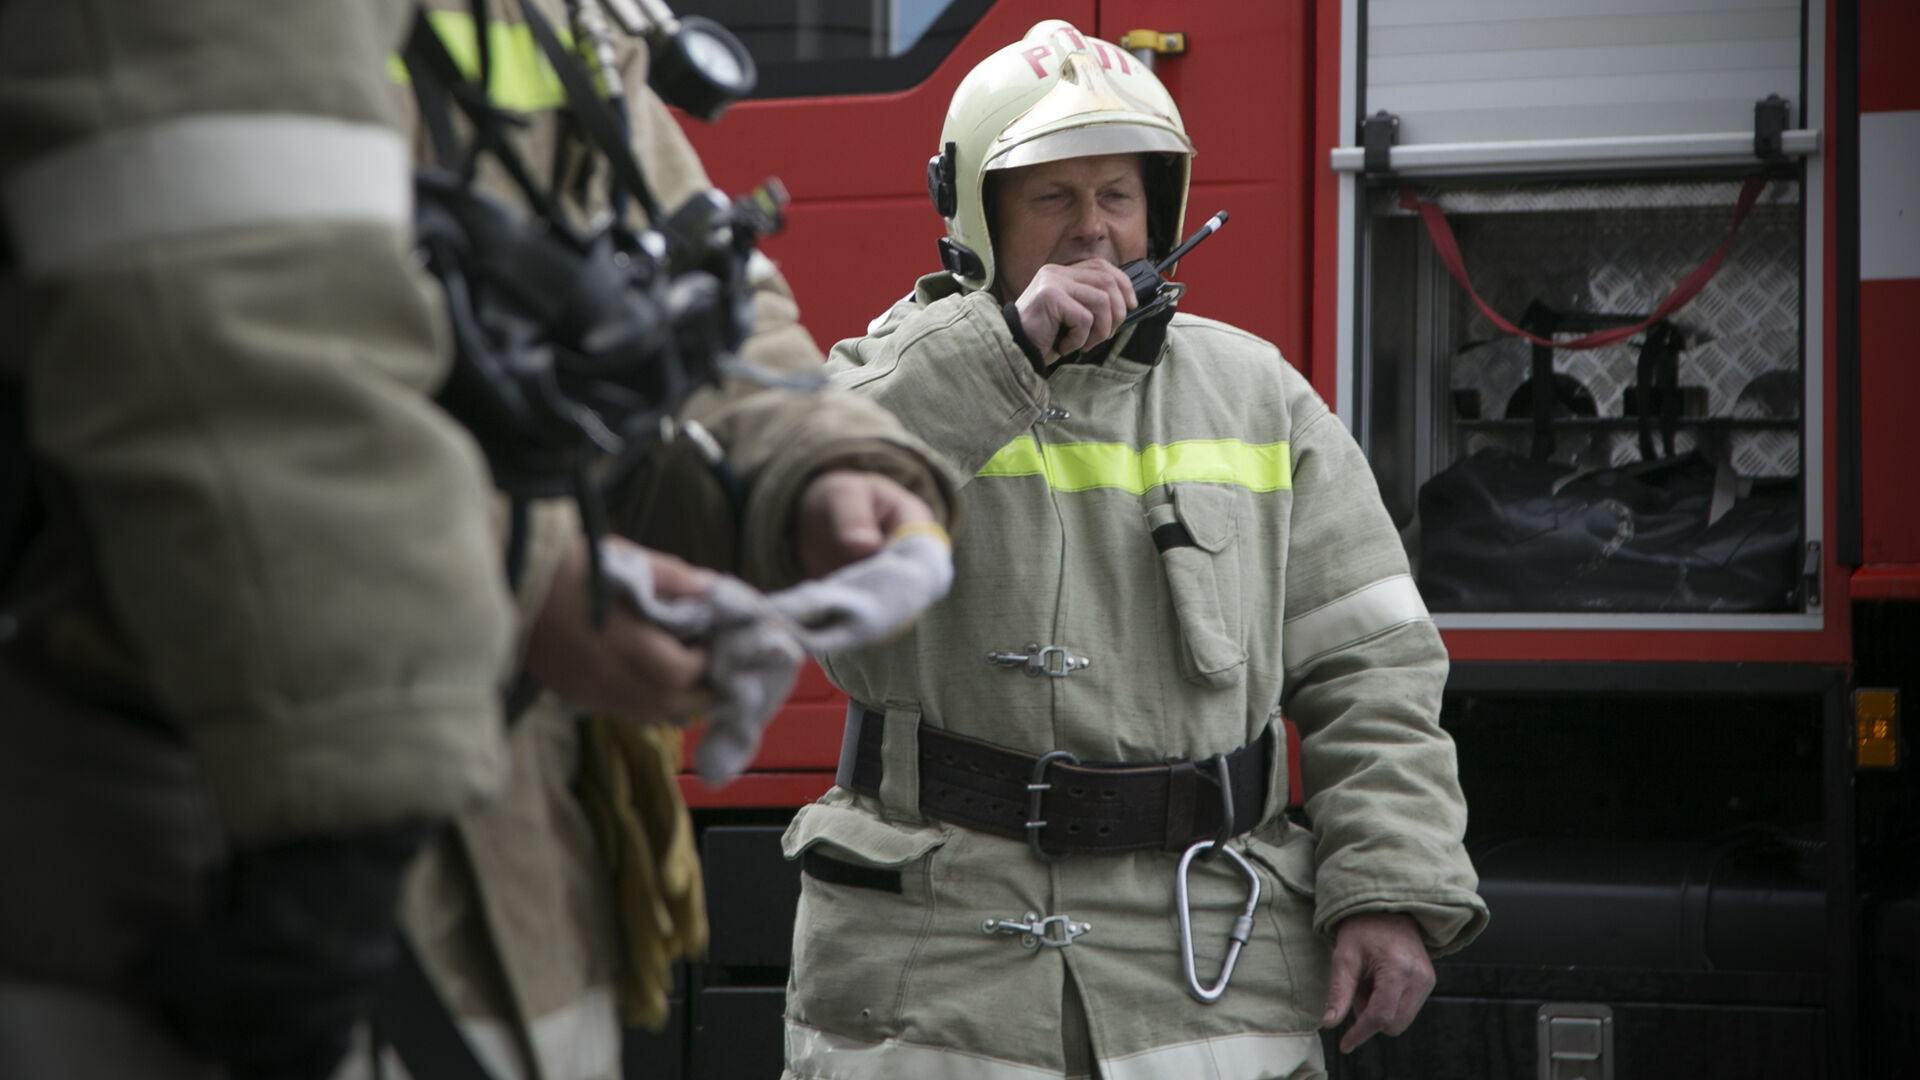 Сигналы о пожарах в Прикамье не обеспечили радиосвязью. А управляли системой через TeamViewer